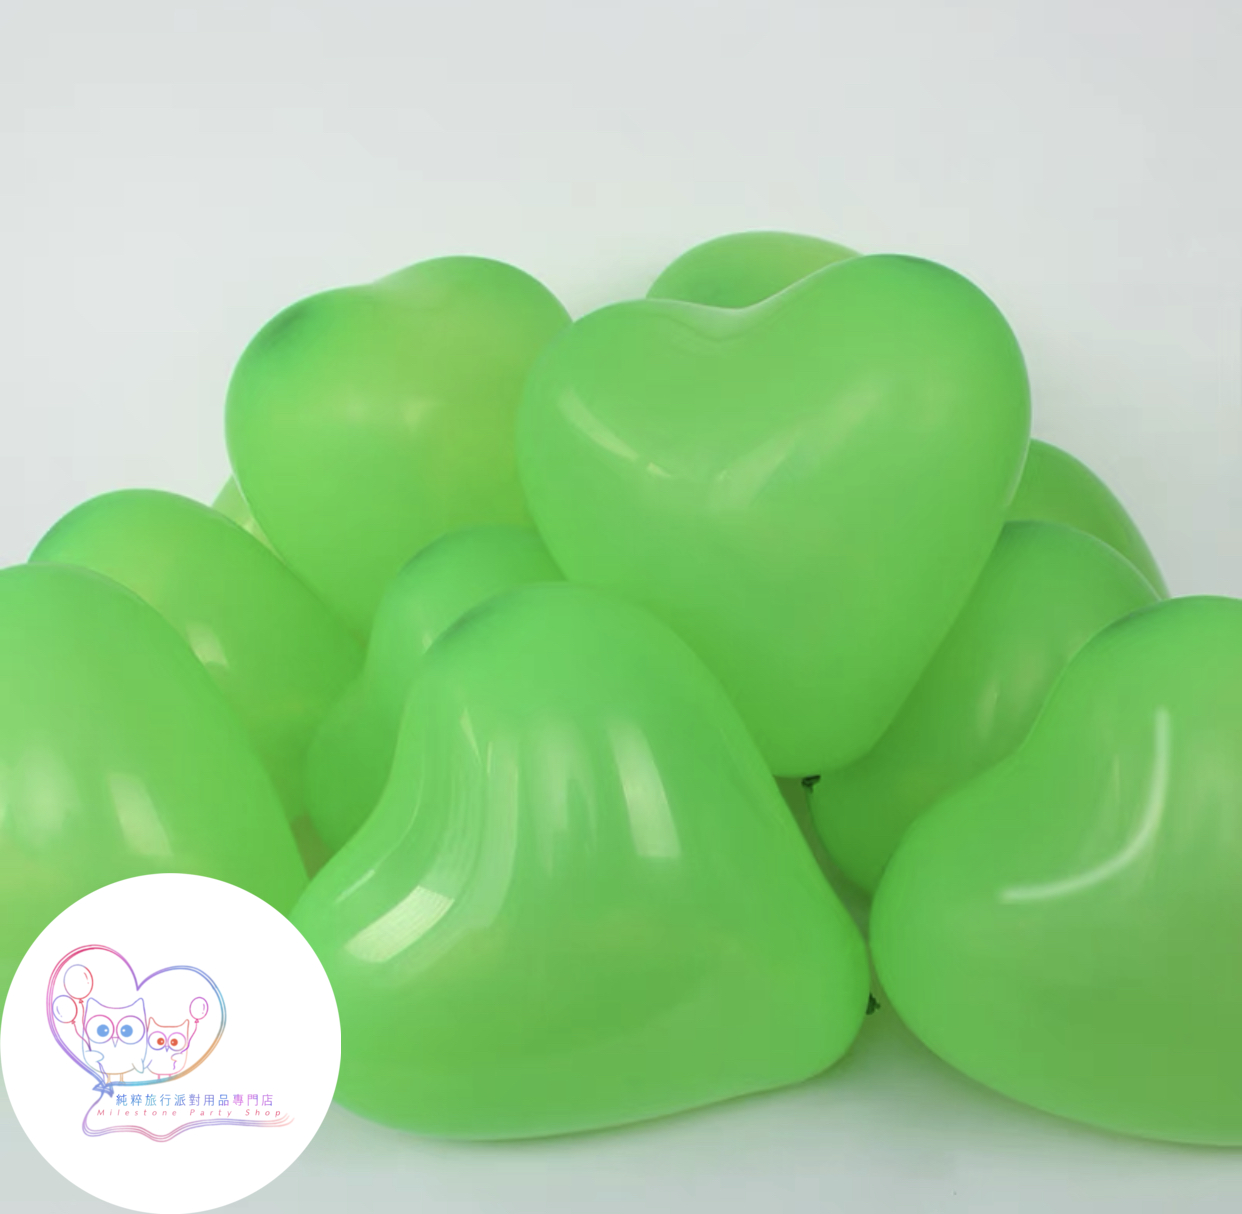 12吋心形氣球 (綠色) (1pc) 12LBH4